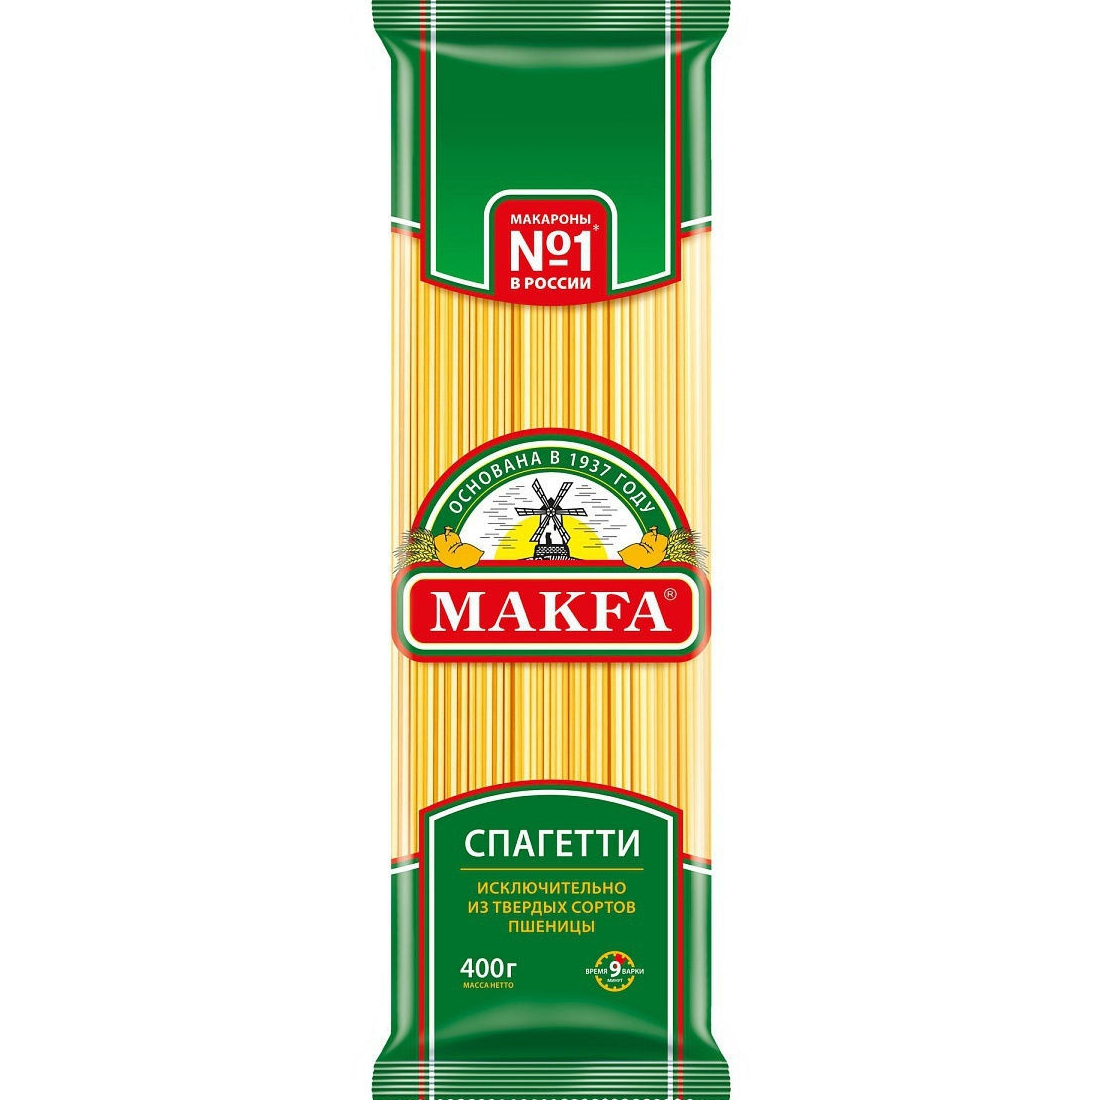 Макароны Makfa Спагетти 400 г макароны старооскольские 400 г спагетти